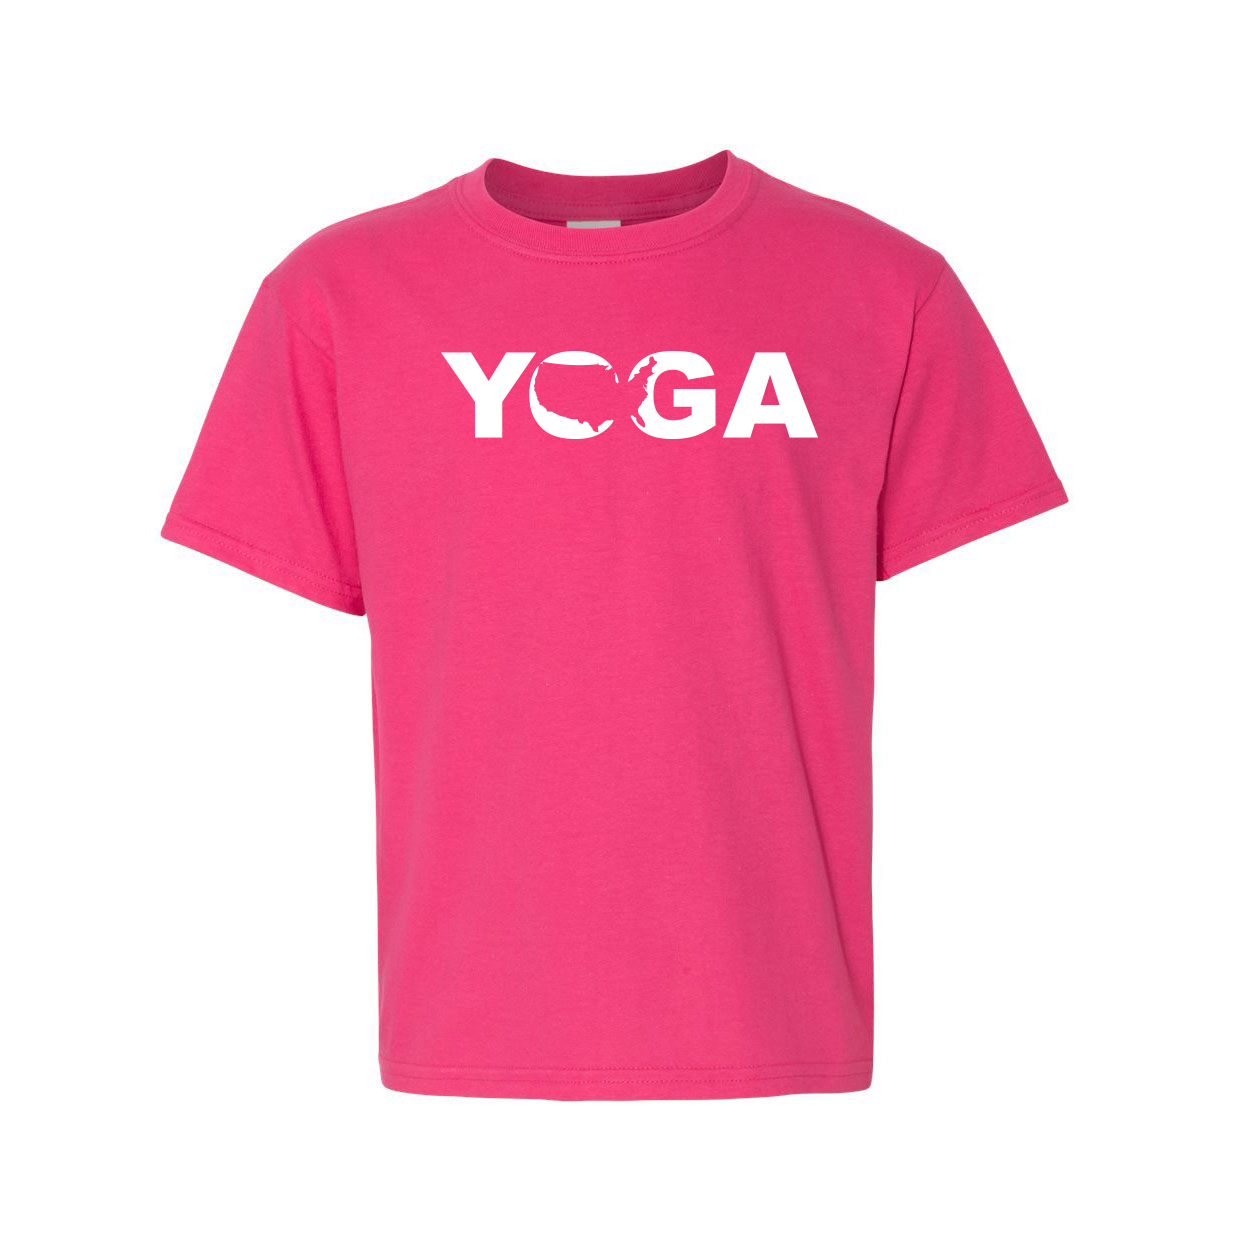 Yoga United States Classic Youth T-Shirt Pink (White Logo)